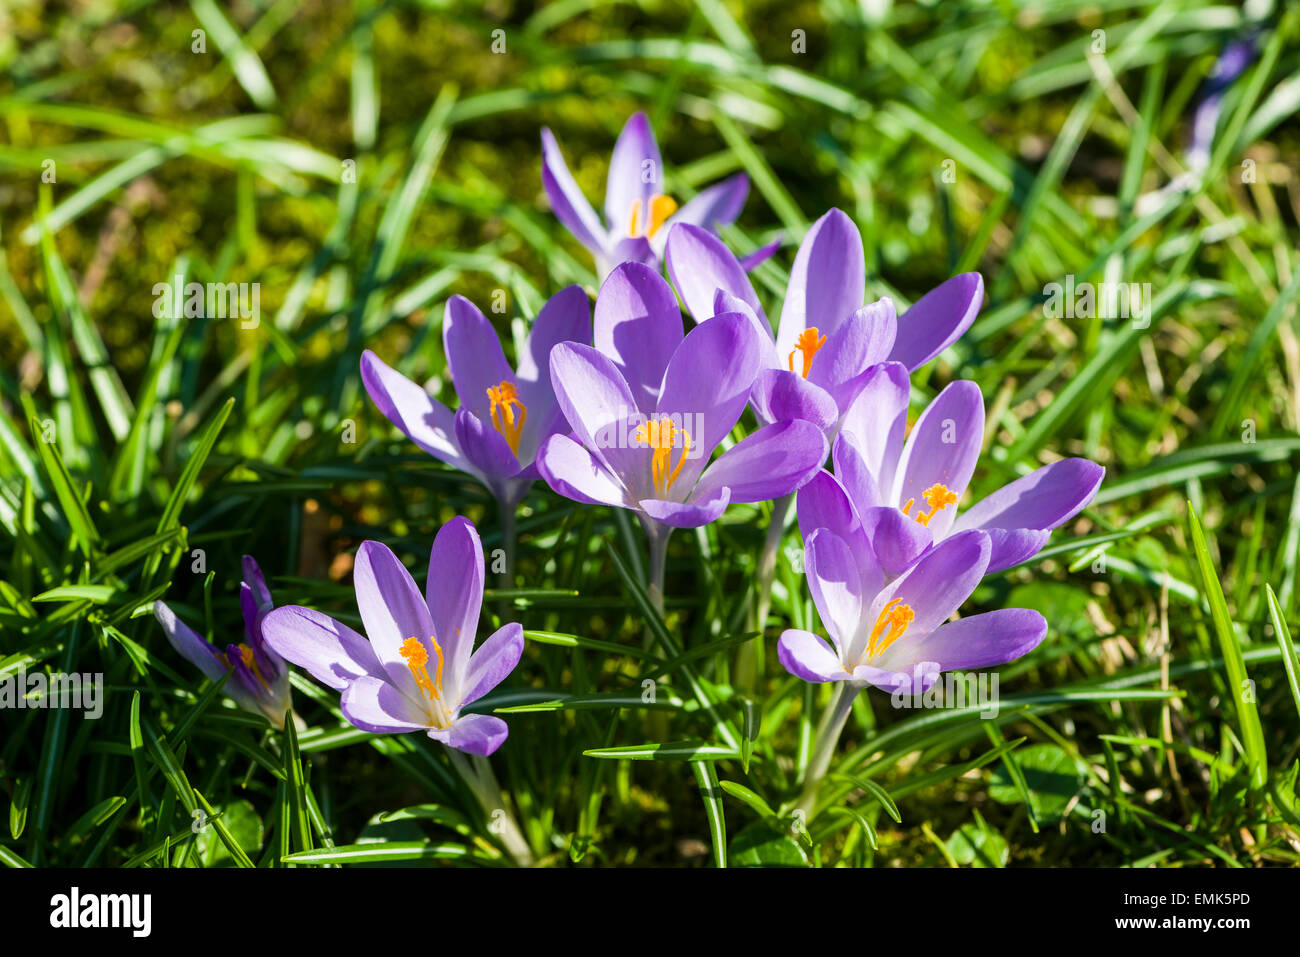 Purple Crocuses (Crocus tommasinianus) blooming in a meadow, Germany Stock Photo